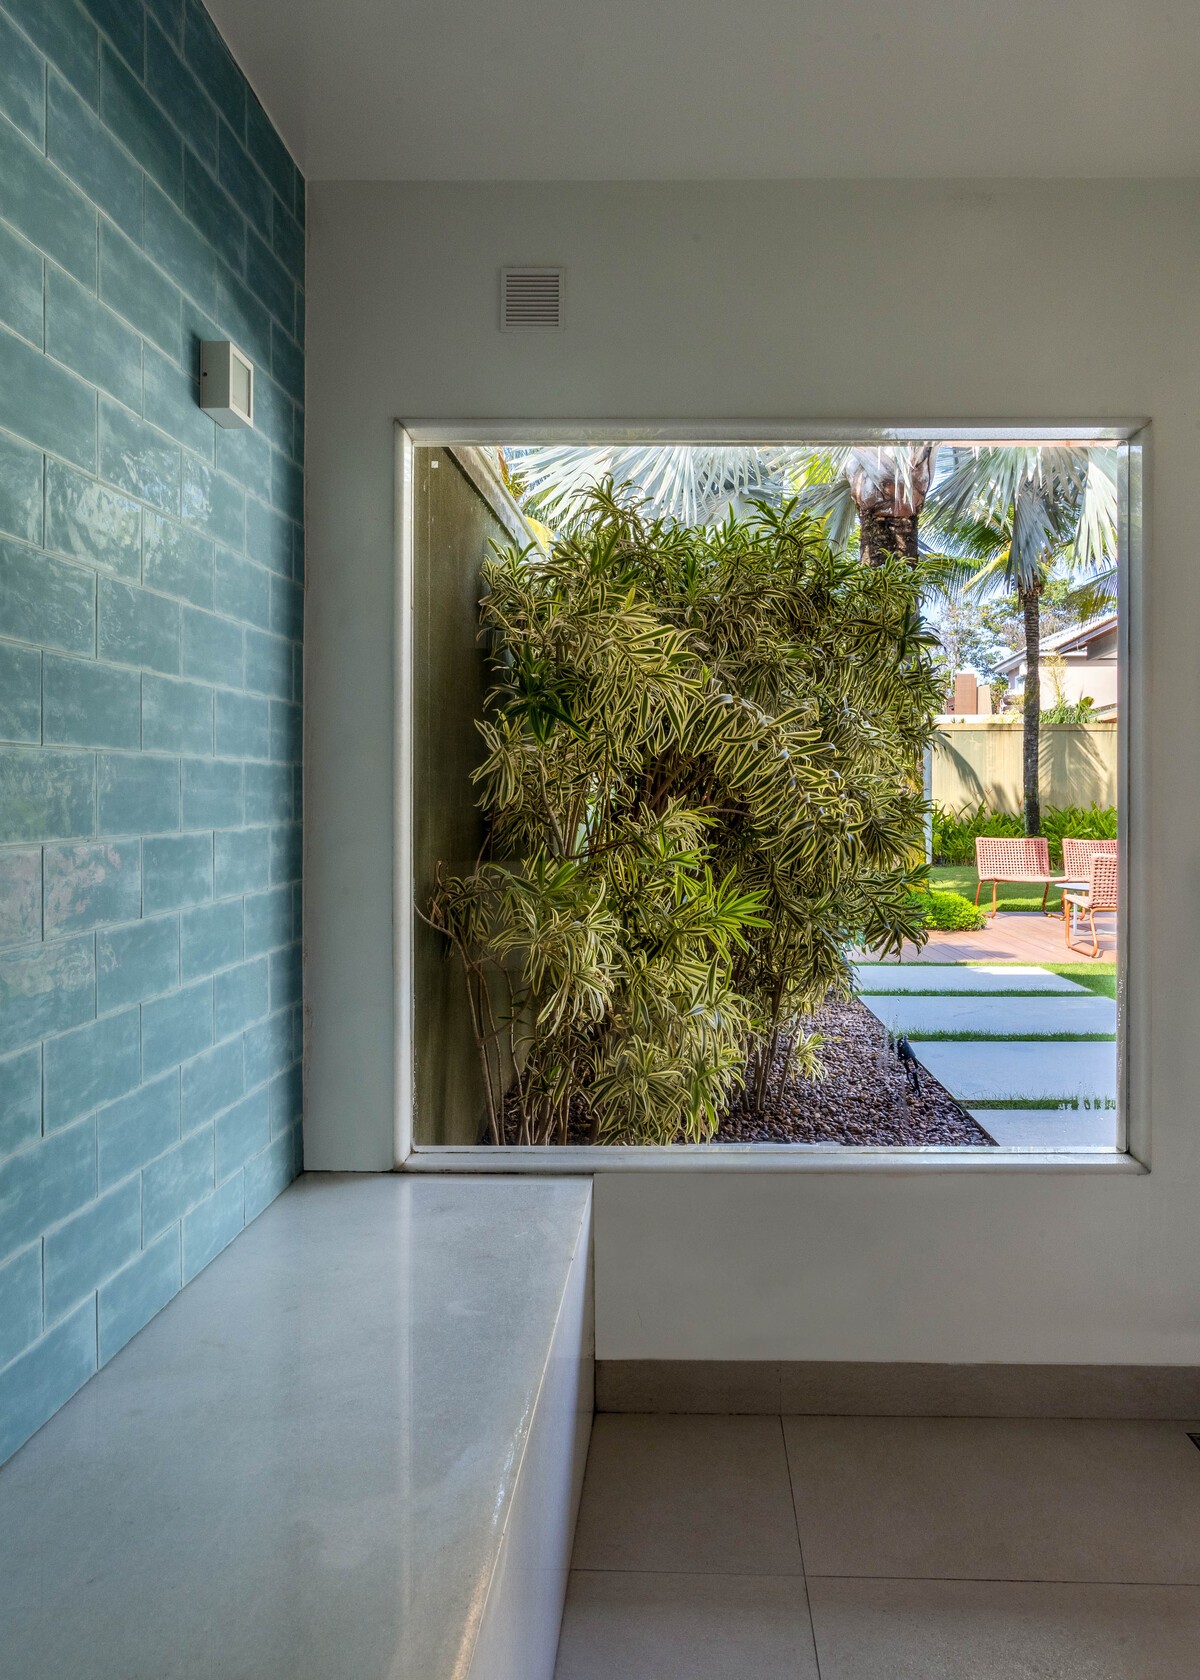 SAUNA | Uma grande janela virada para o jardim permite contemplar a área externa (Foto: André Nazareth / Divulgação)